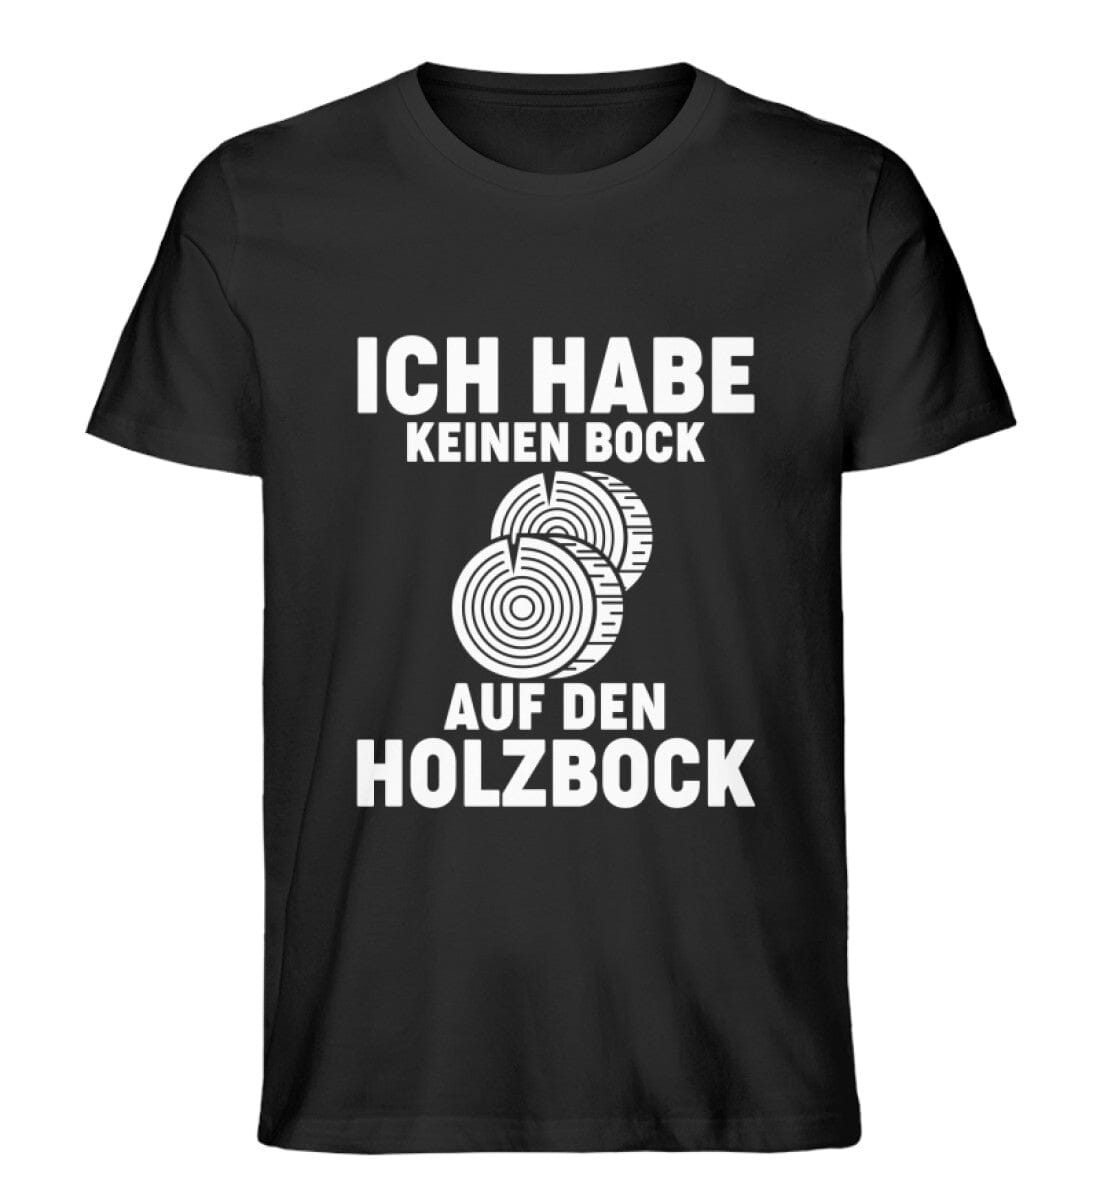 KEINEN BOCK AUF DEN HOLZBOCK - Unisex Premium Bio Shirt Black XS 